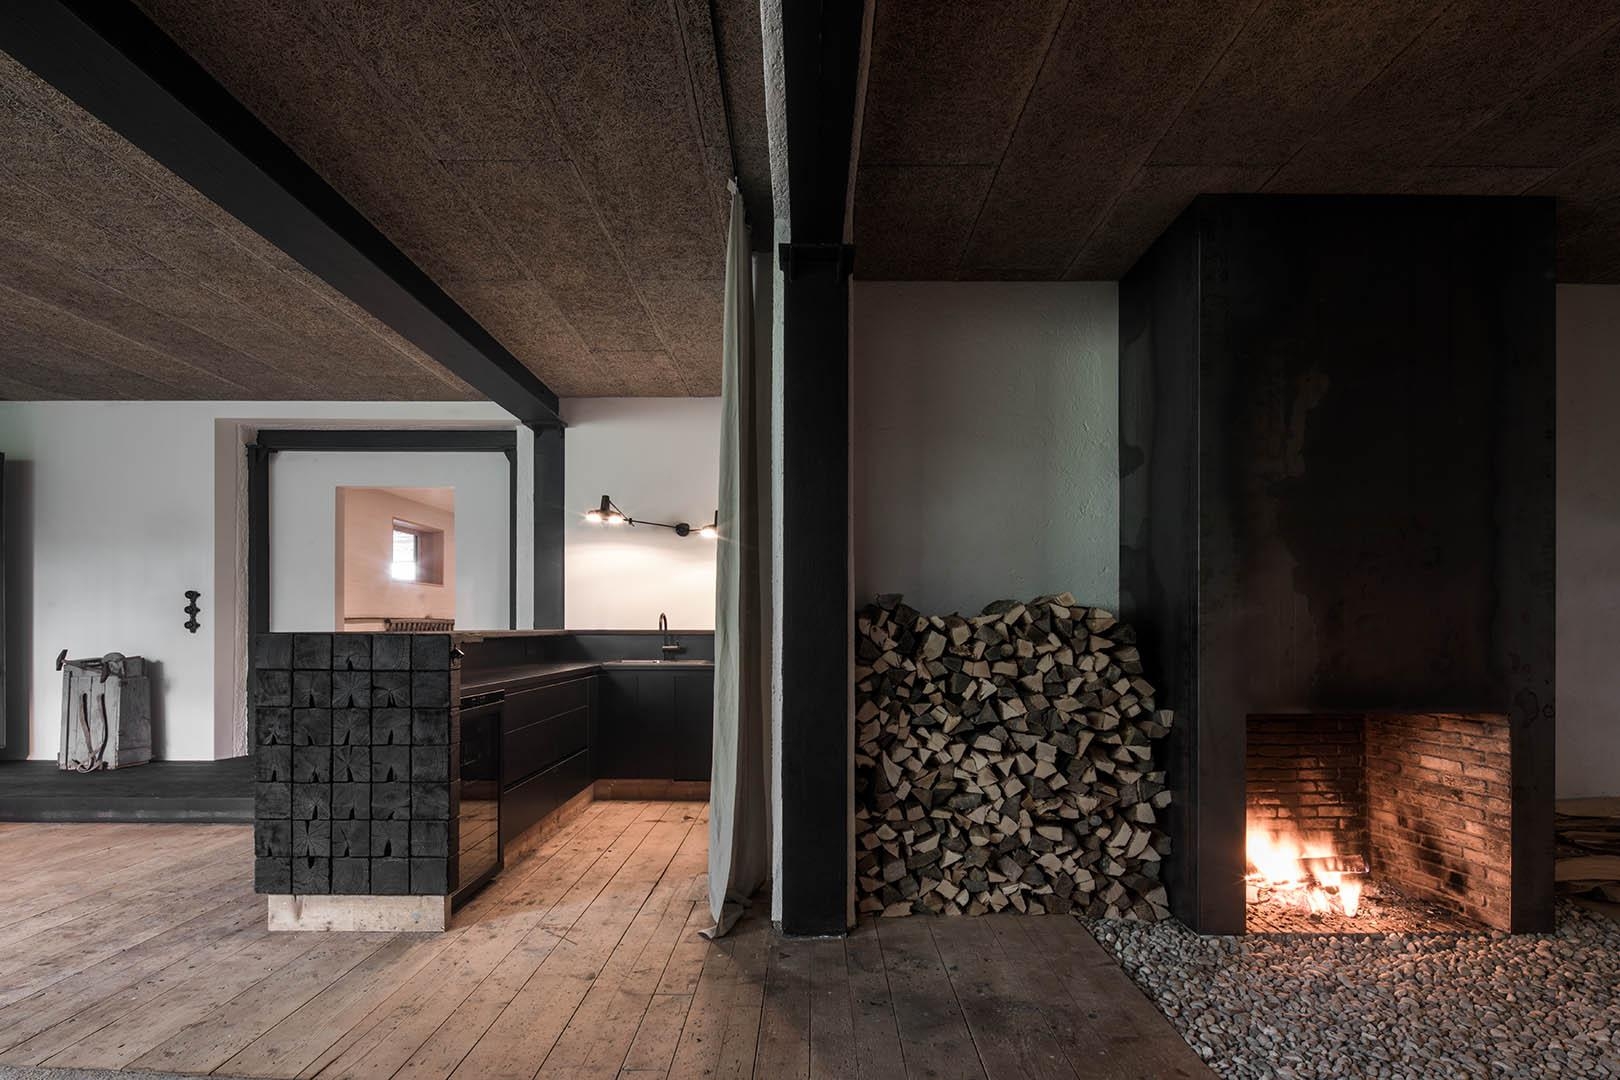 Lounge T
#destilat #interiordesign #innenarchitektur #agentur #wien #linz #interior #interiordesigntrends #lounge #fireplace #private